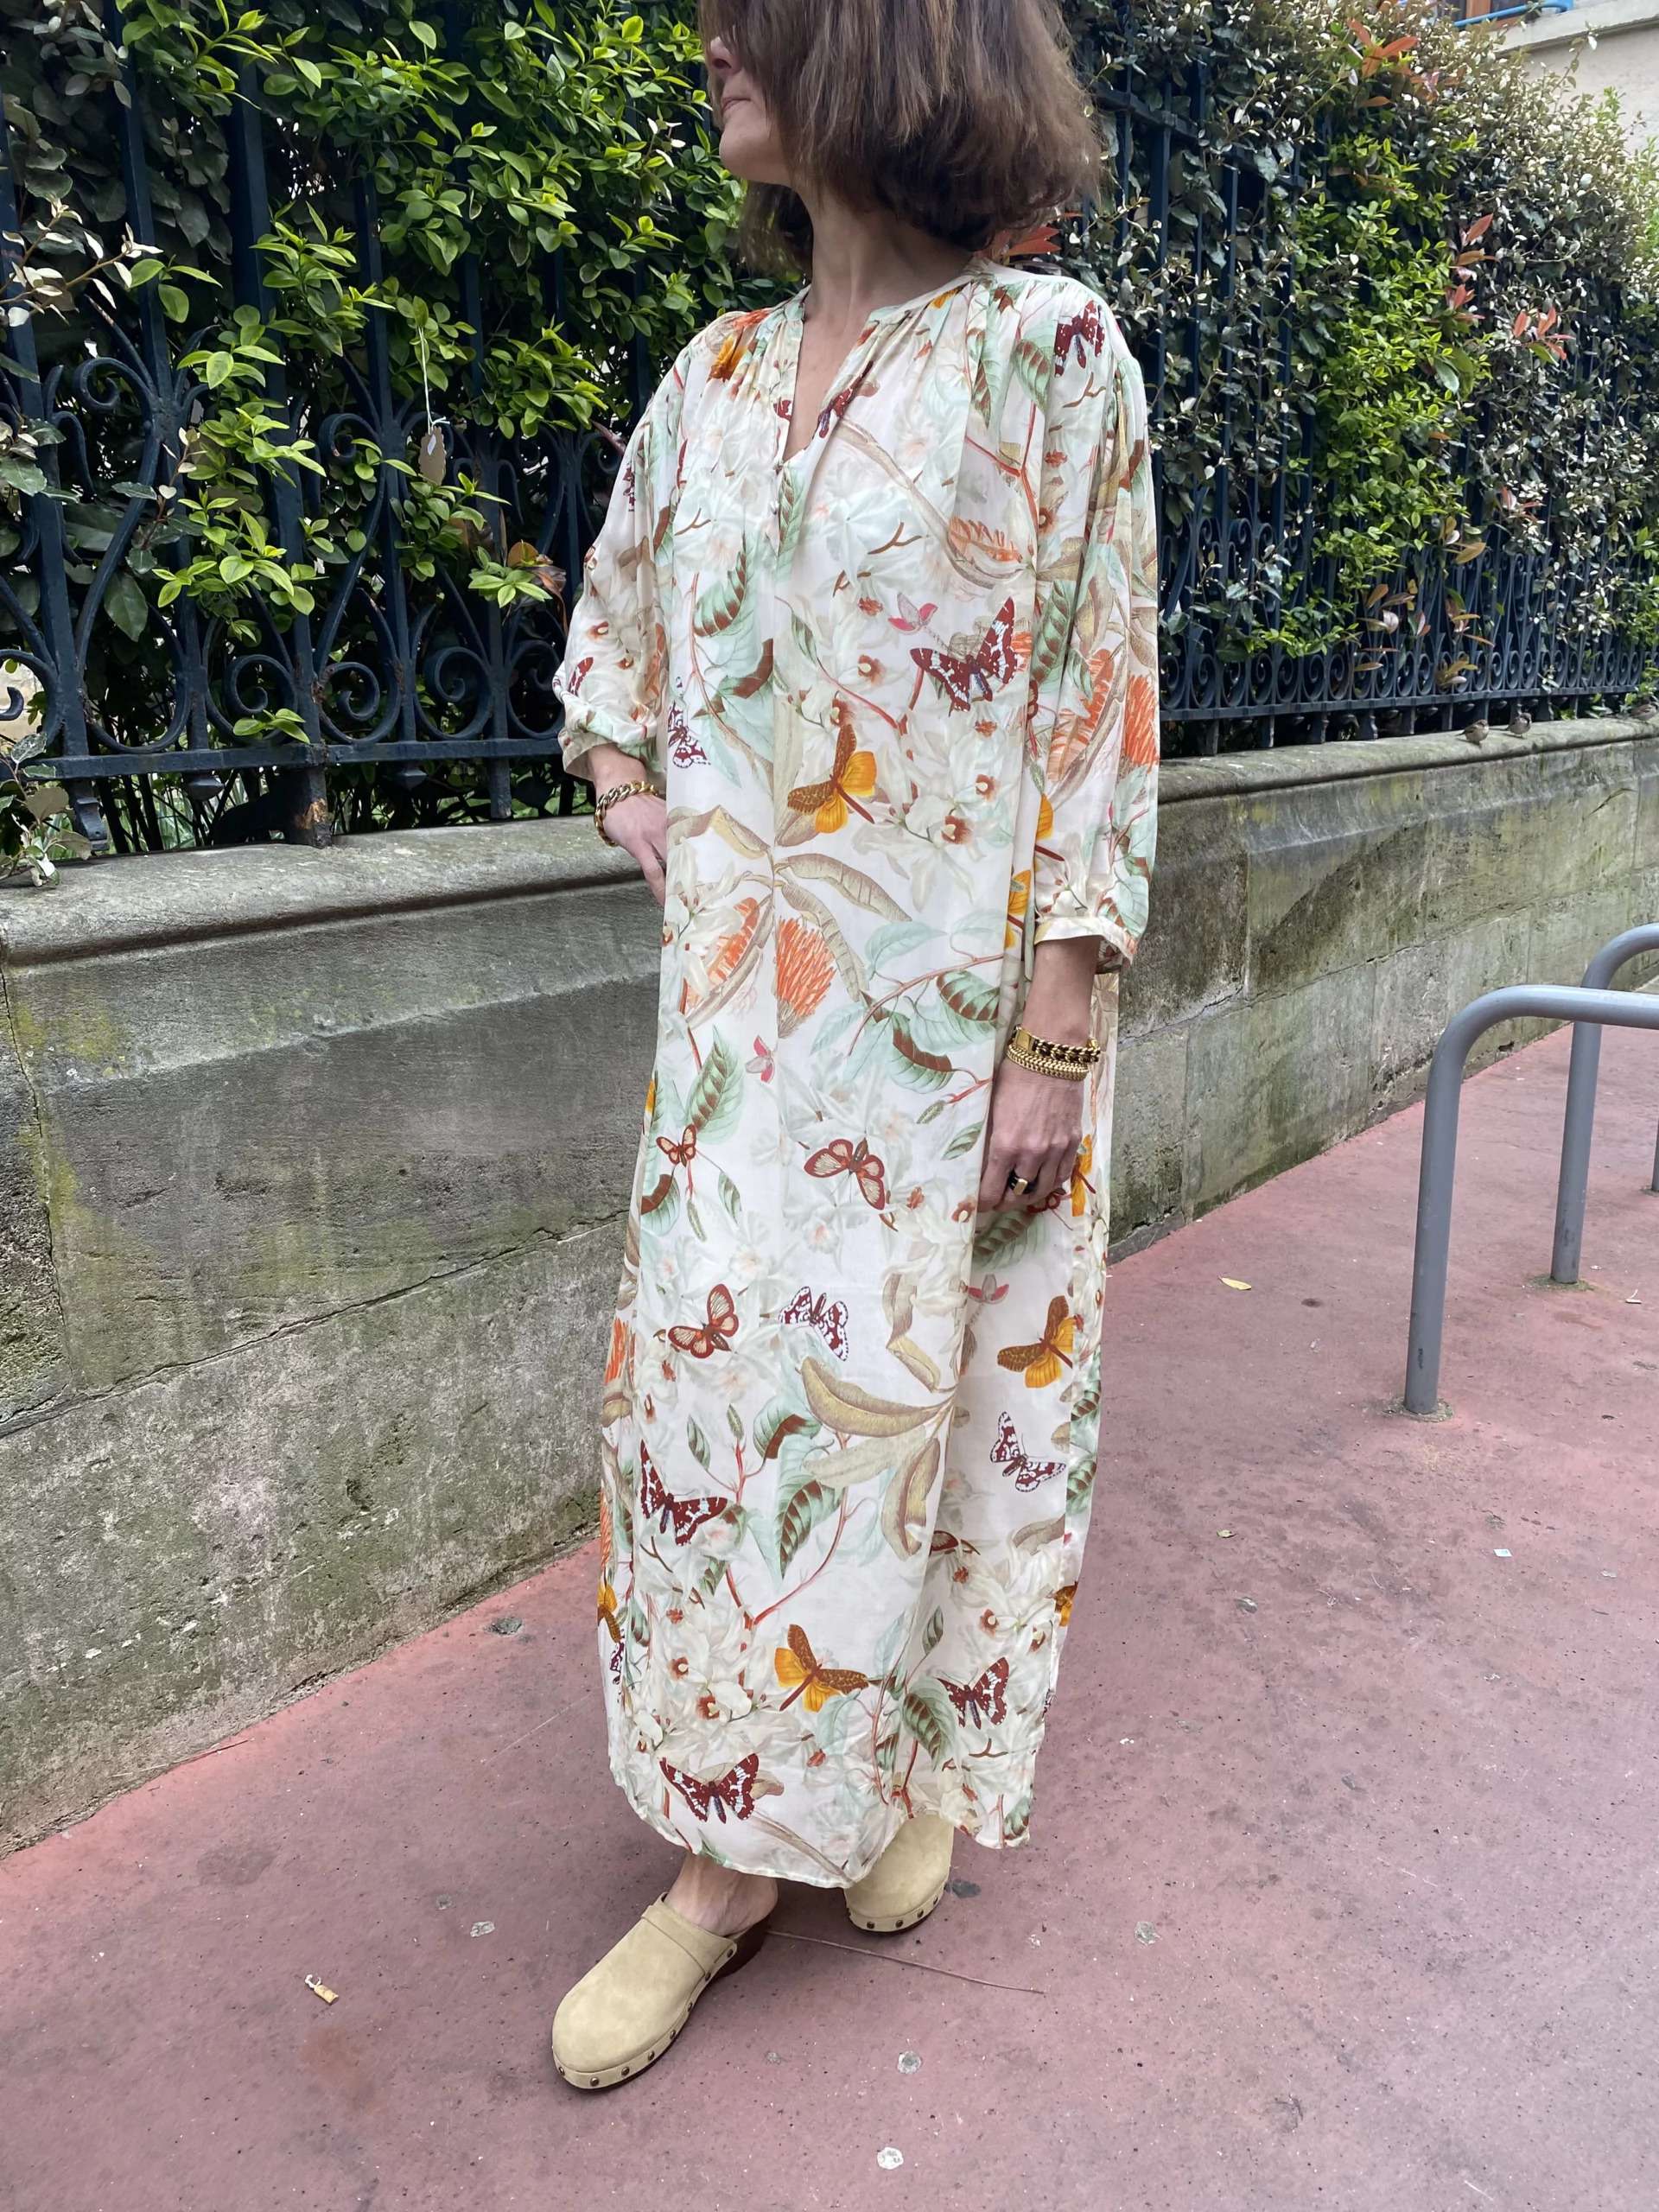 Marais Paris Robe Dana, robe écru avec motif fleurs, Le Comptoir Rouen Le Havre